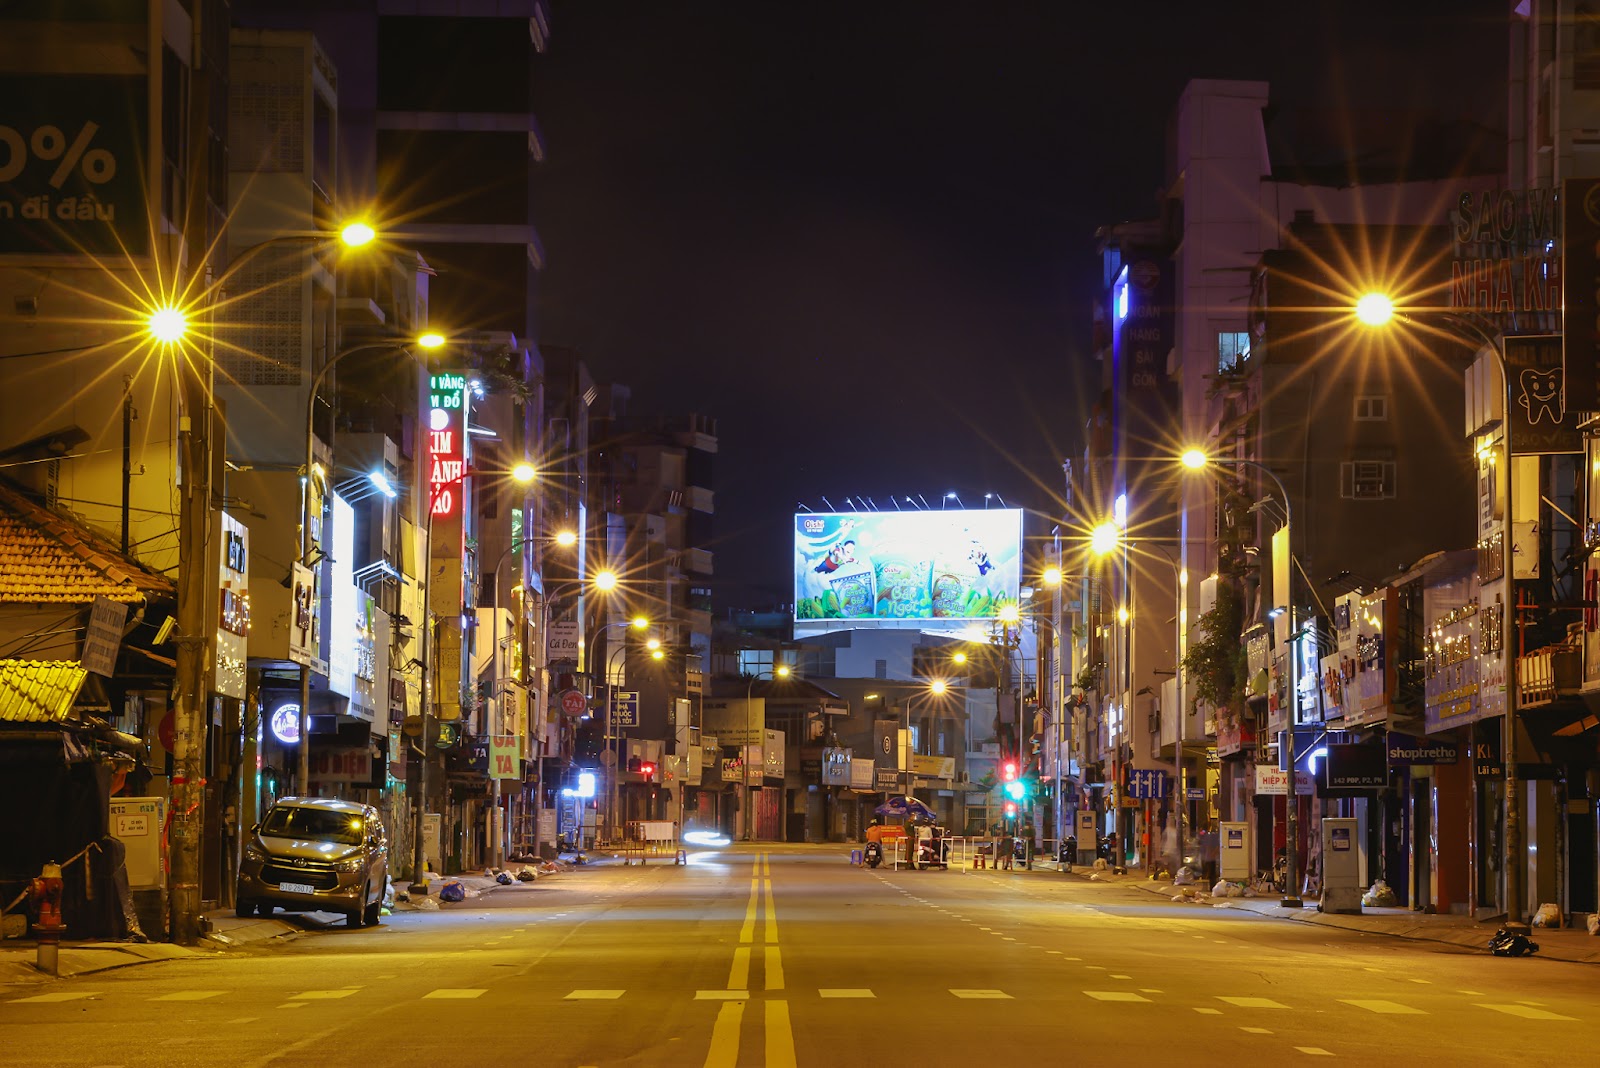 “Bổ túc” đường phố Sài Gòn lúc lên đèn dành cho người ở nhà lâu quá - 9